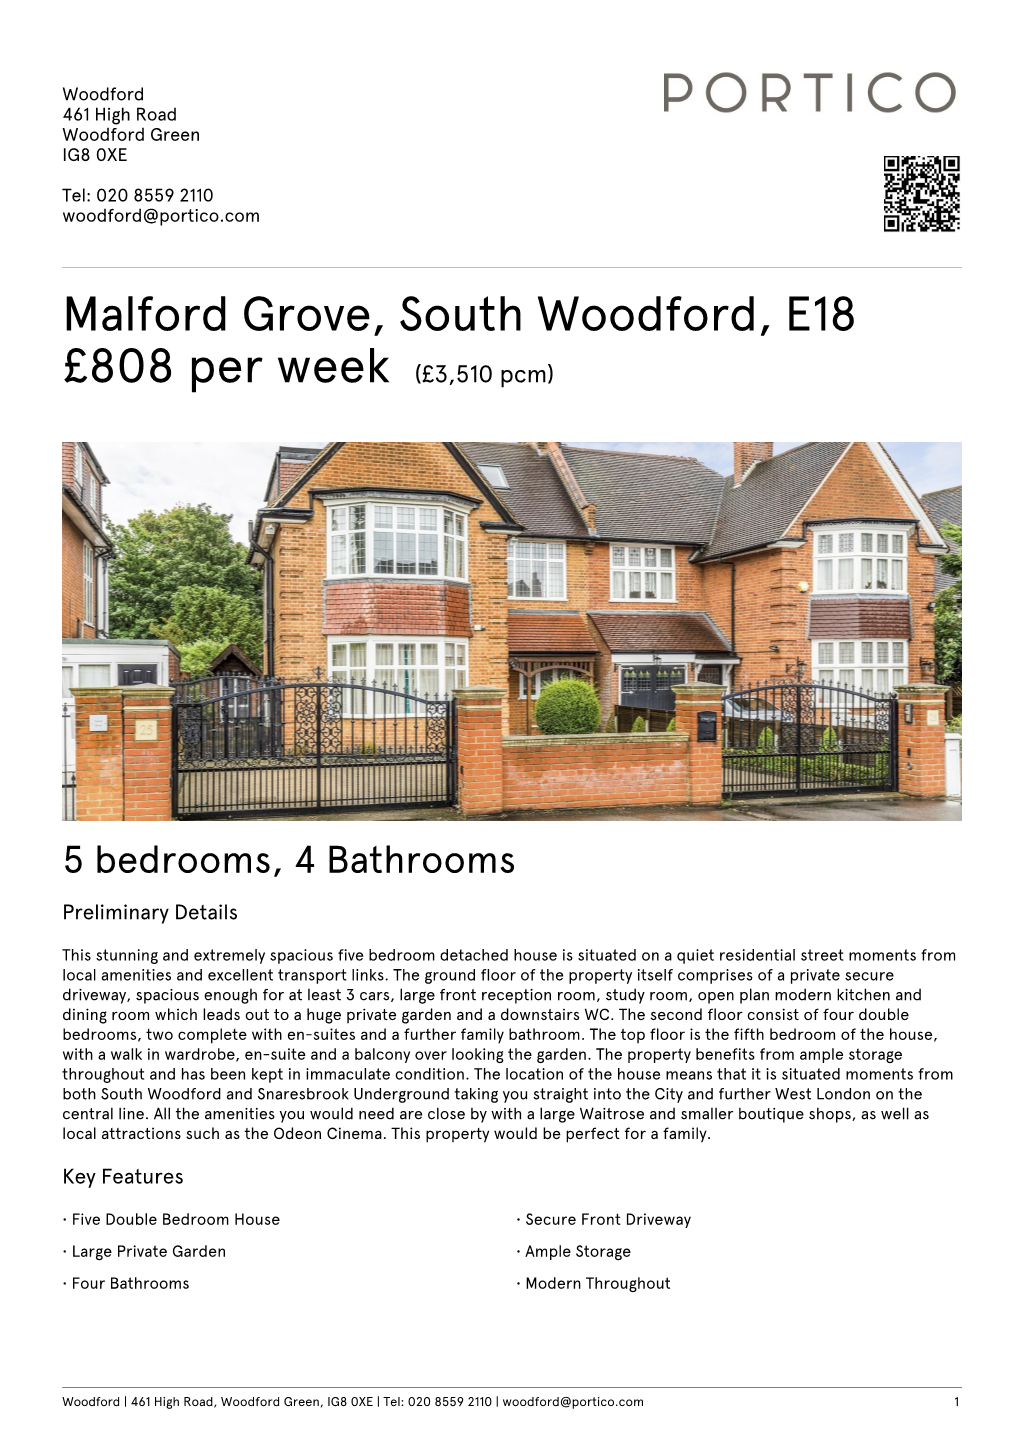 Malford Grove, South Woodford, E18 £808 Per Week